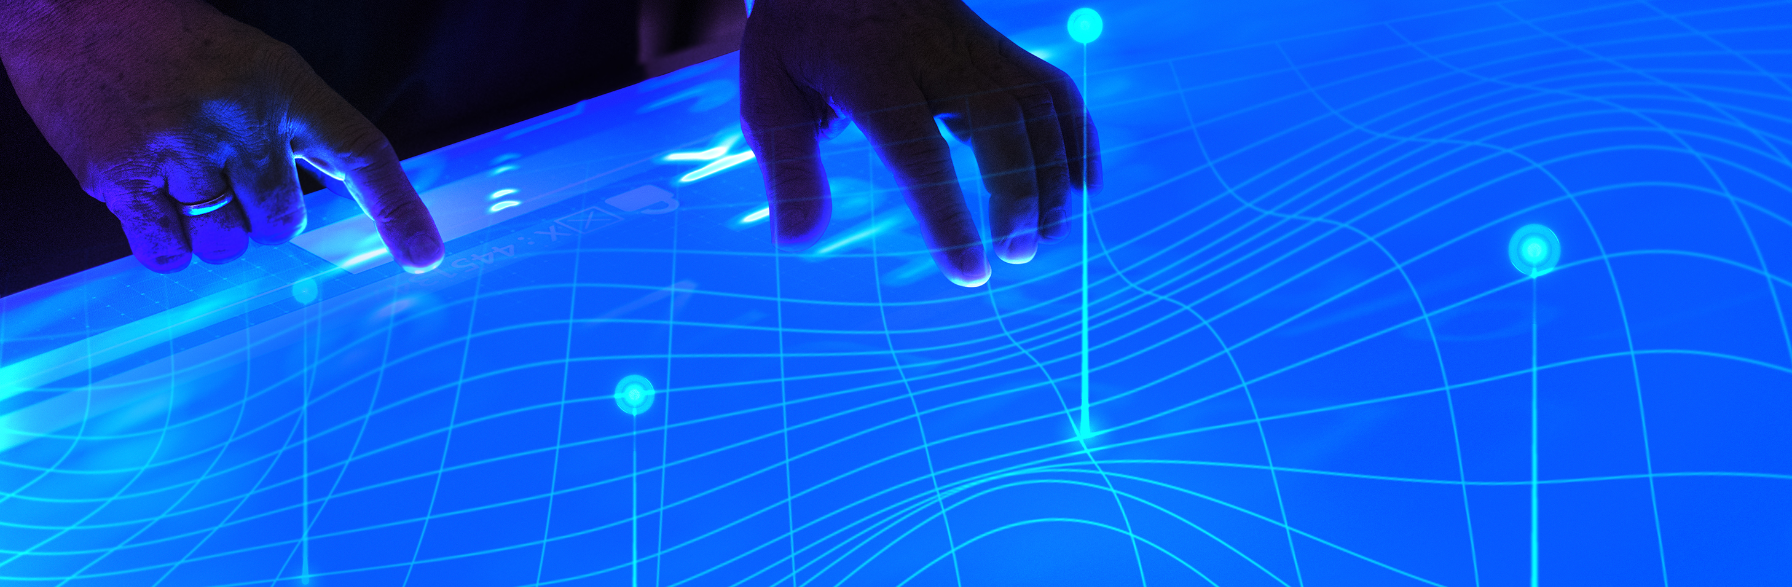 Pessoa conectada em uma rede digital de hologramas